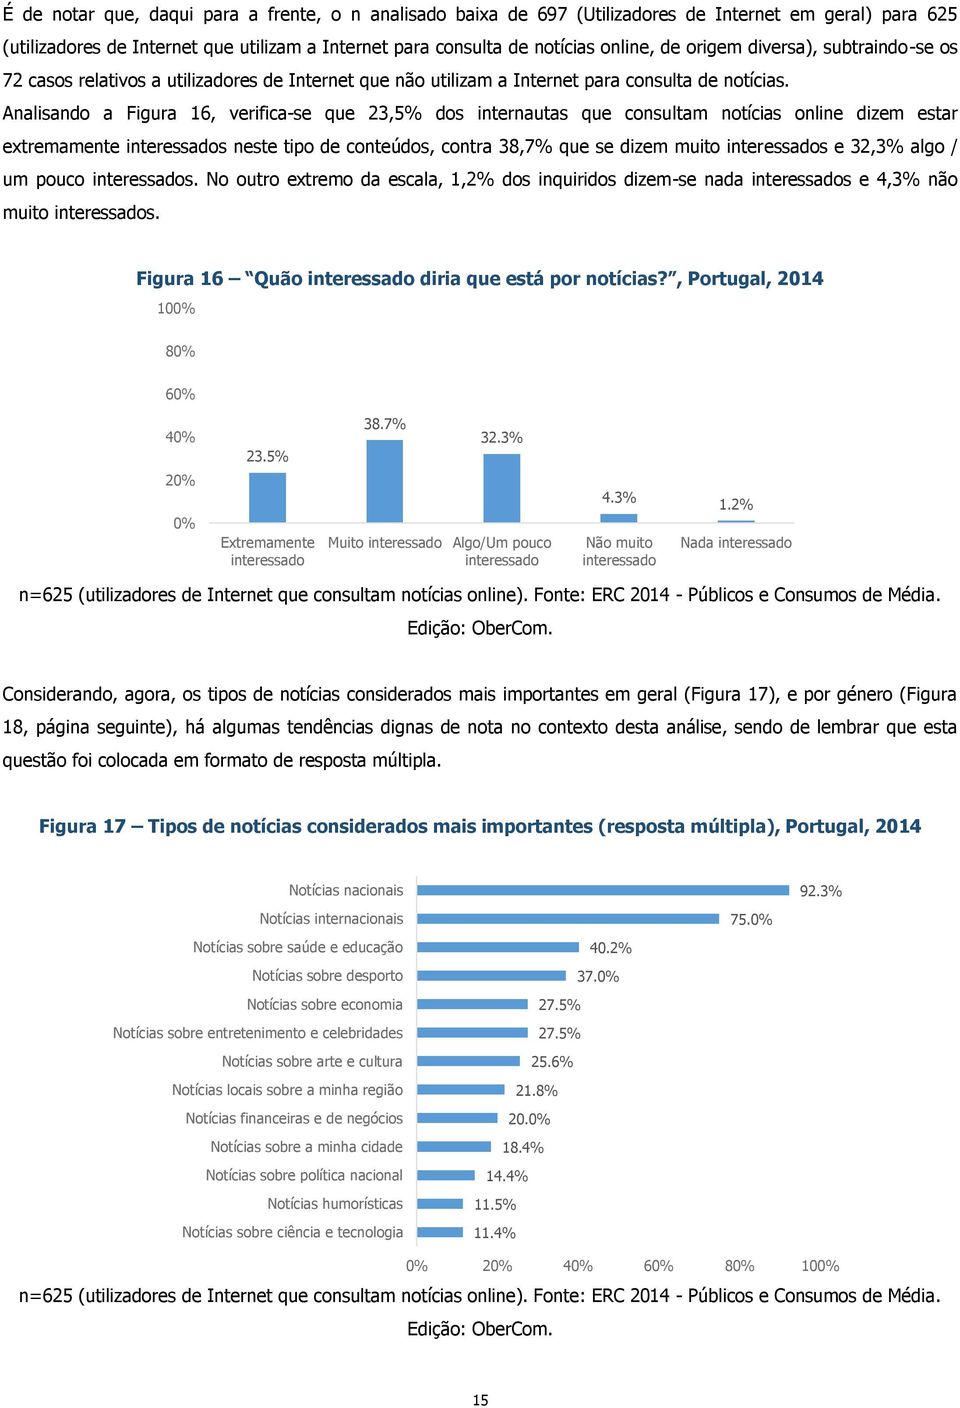 Analisando a Figura 16, verifica-se que 23,5% dos internautas que consultam notícias online dizem estar extremamente interessados neste tipo de conteúdos, contra 38,7% que se dizem muito interessados